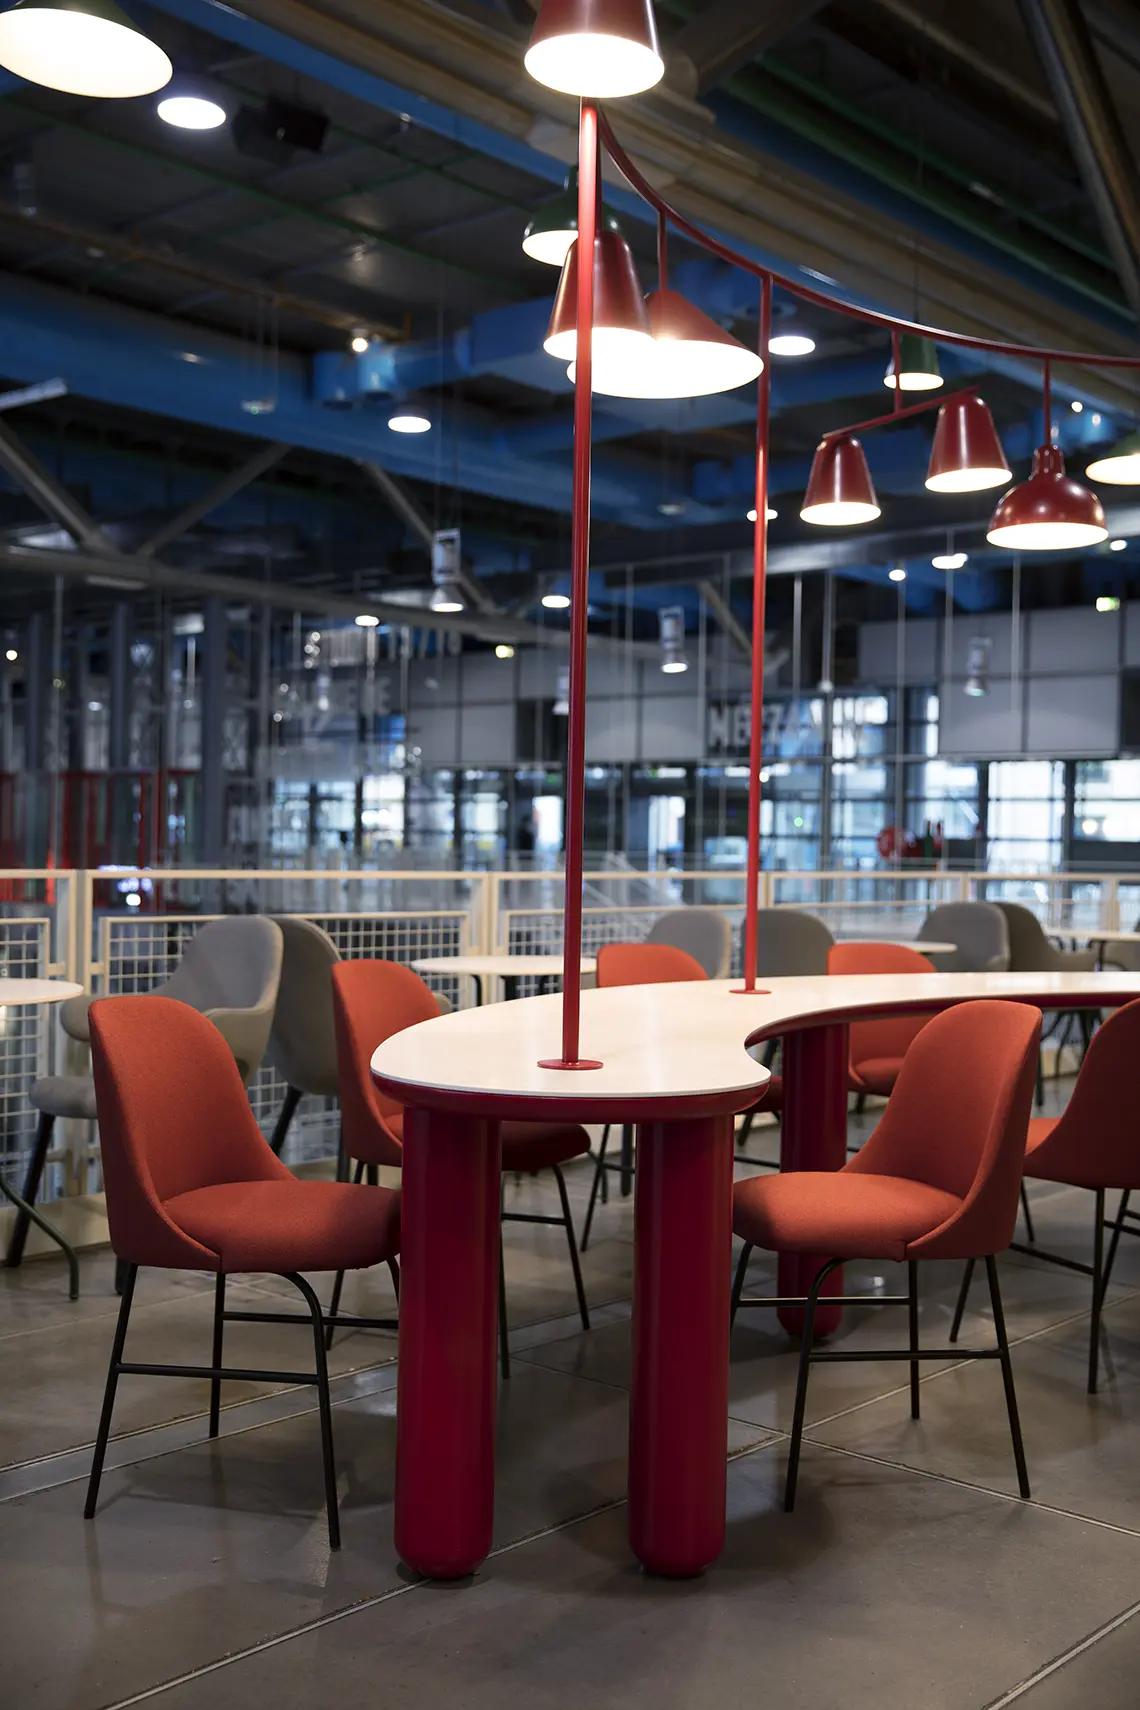 café centre pompidou - Cuánto cuesta entrar al Pompidou